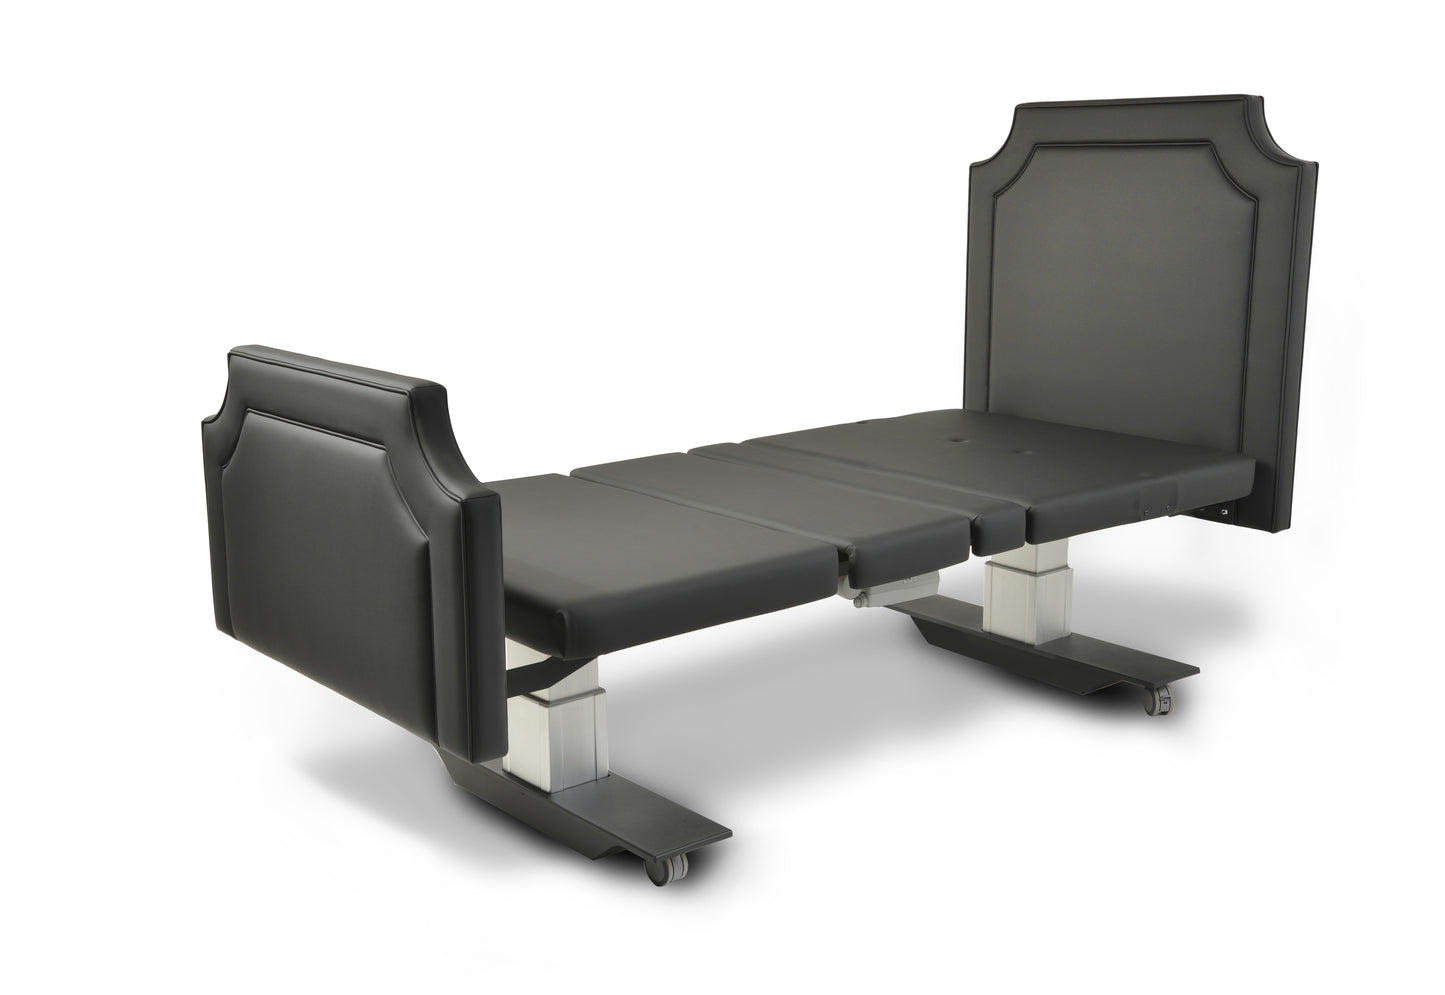 Assured Comfort Mobile Series Hi-Low Adjustable Homecare Bed. 